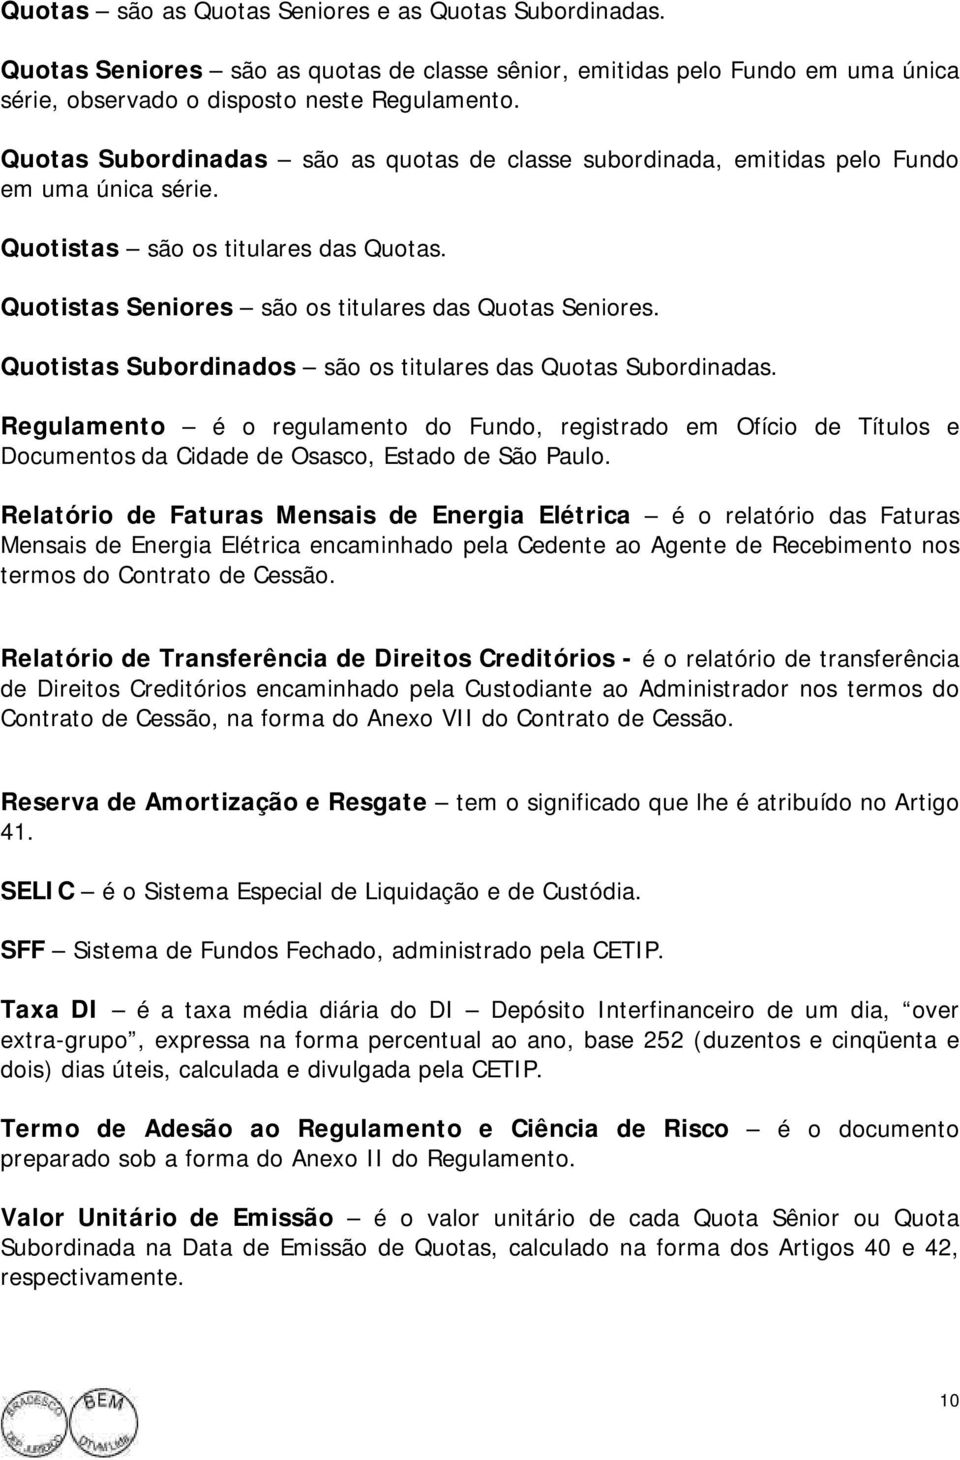 Quotistas Subordinados são os titulares das Quotas Subordinadas. Regulamento é o regulamento do Fundo, registrado em Ofício de Títulos e Documentos da Cidade de Osasco, Estado de São Paulo.